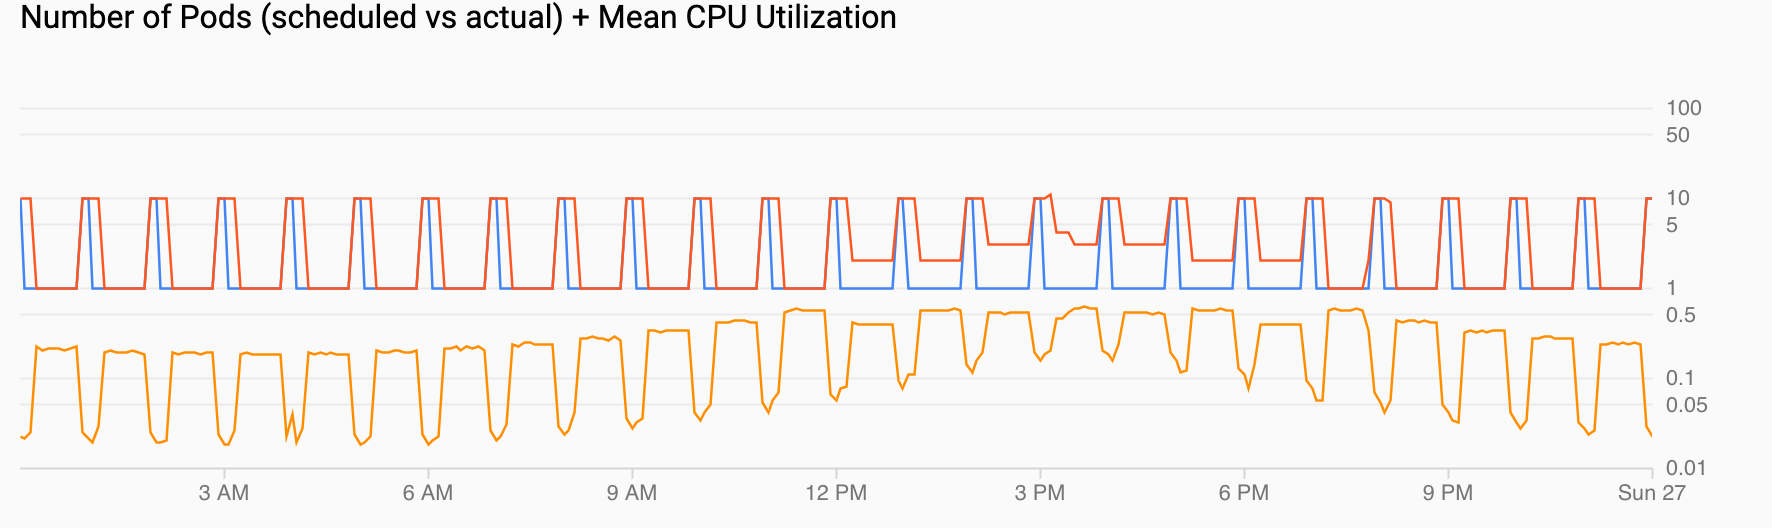 그래프 2개 하나는 매시간마다 수요가 급증하는 pod 수요를 보여줍니다. 다른 하나는 CPU 사용률이 오르락 내리락 하지만 구성된 높은 값에서서 최고가 된다는 것을 보여줍니다.